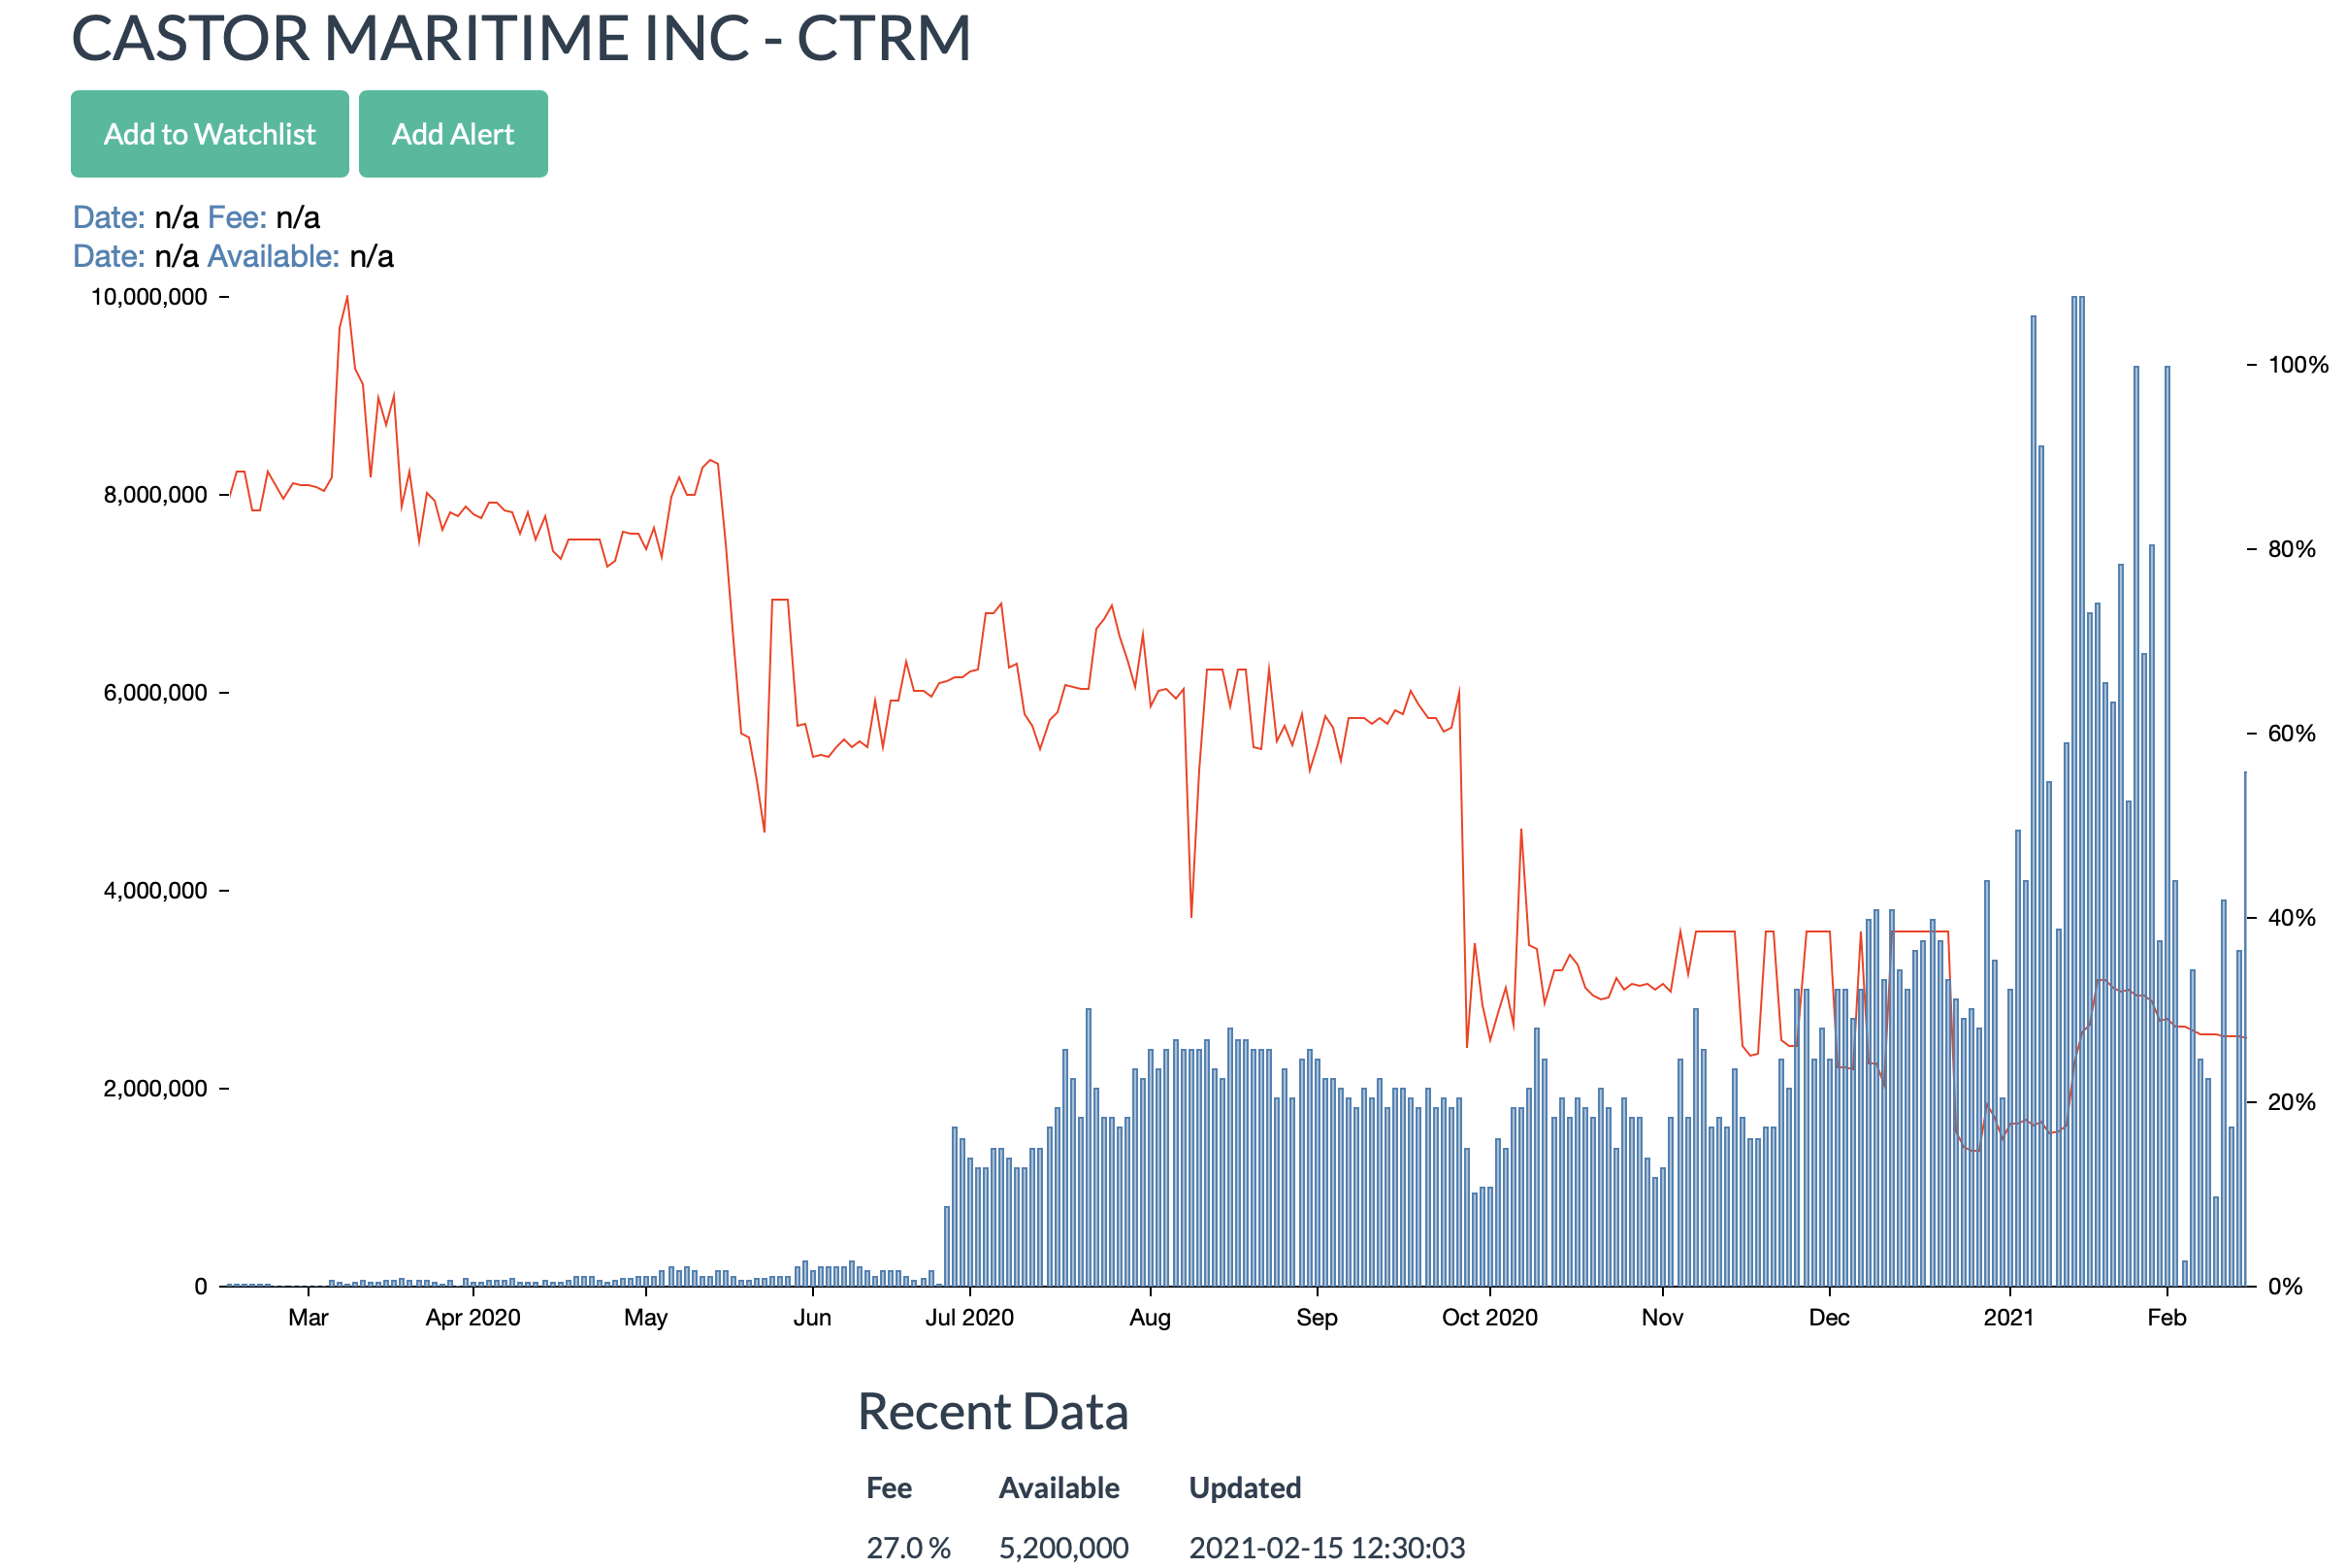 ctrm stock prediction reddit